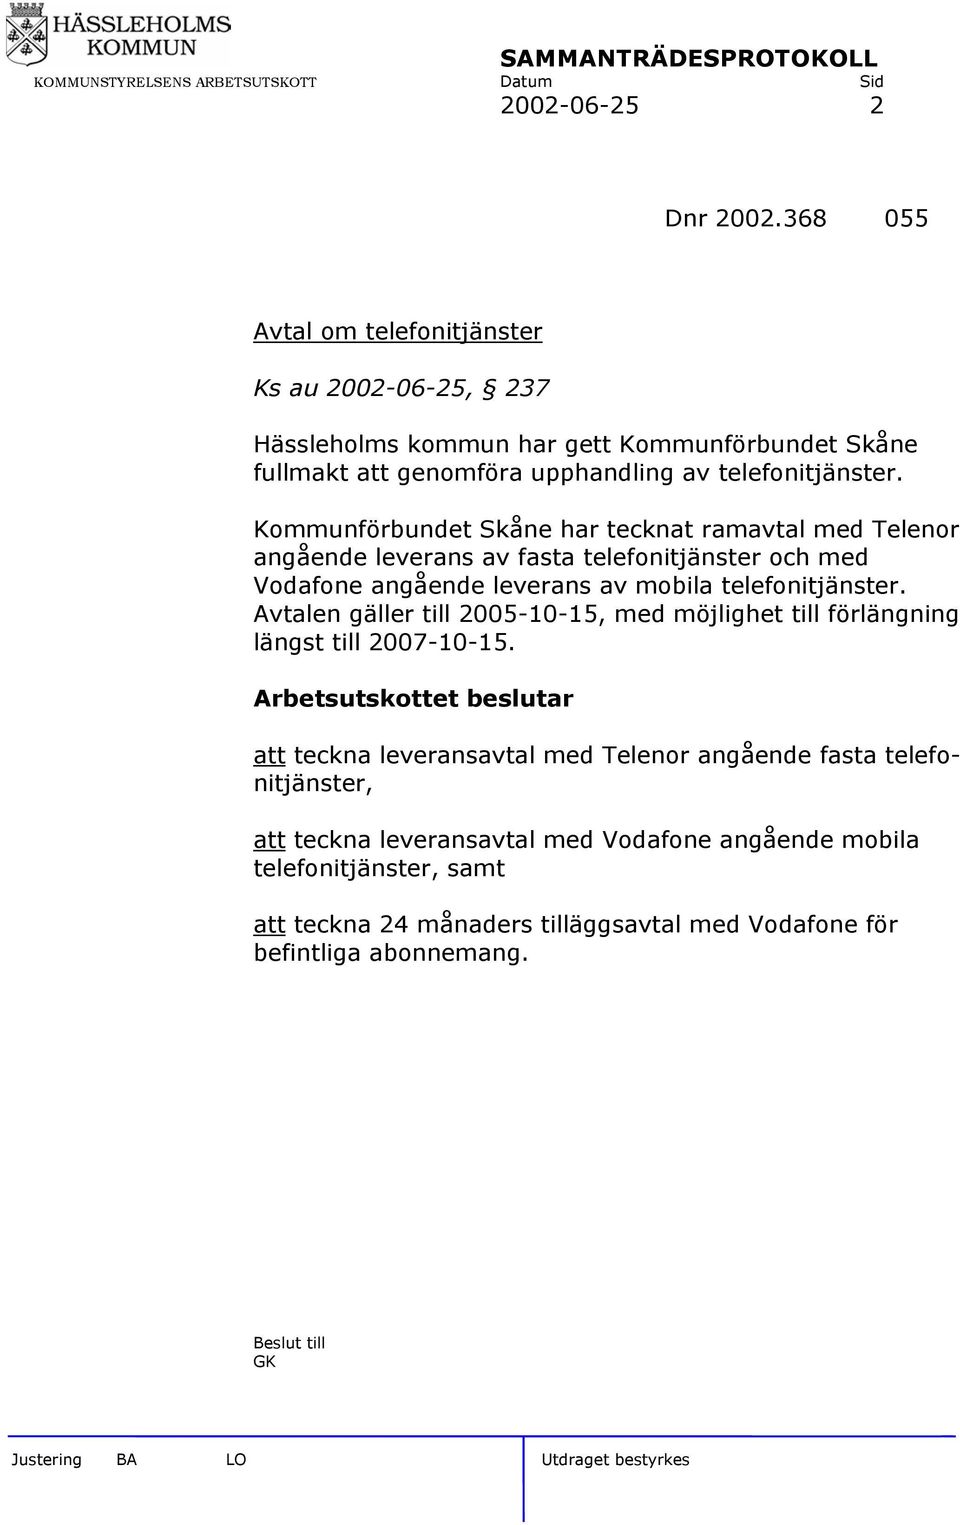 Kommunförbundet Skåne har tecknat ramavtal med Telenor angående leverans av fasta telefonitjänster och med Vodafone angående leverans av mobila telefonitjänster.